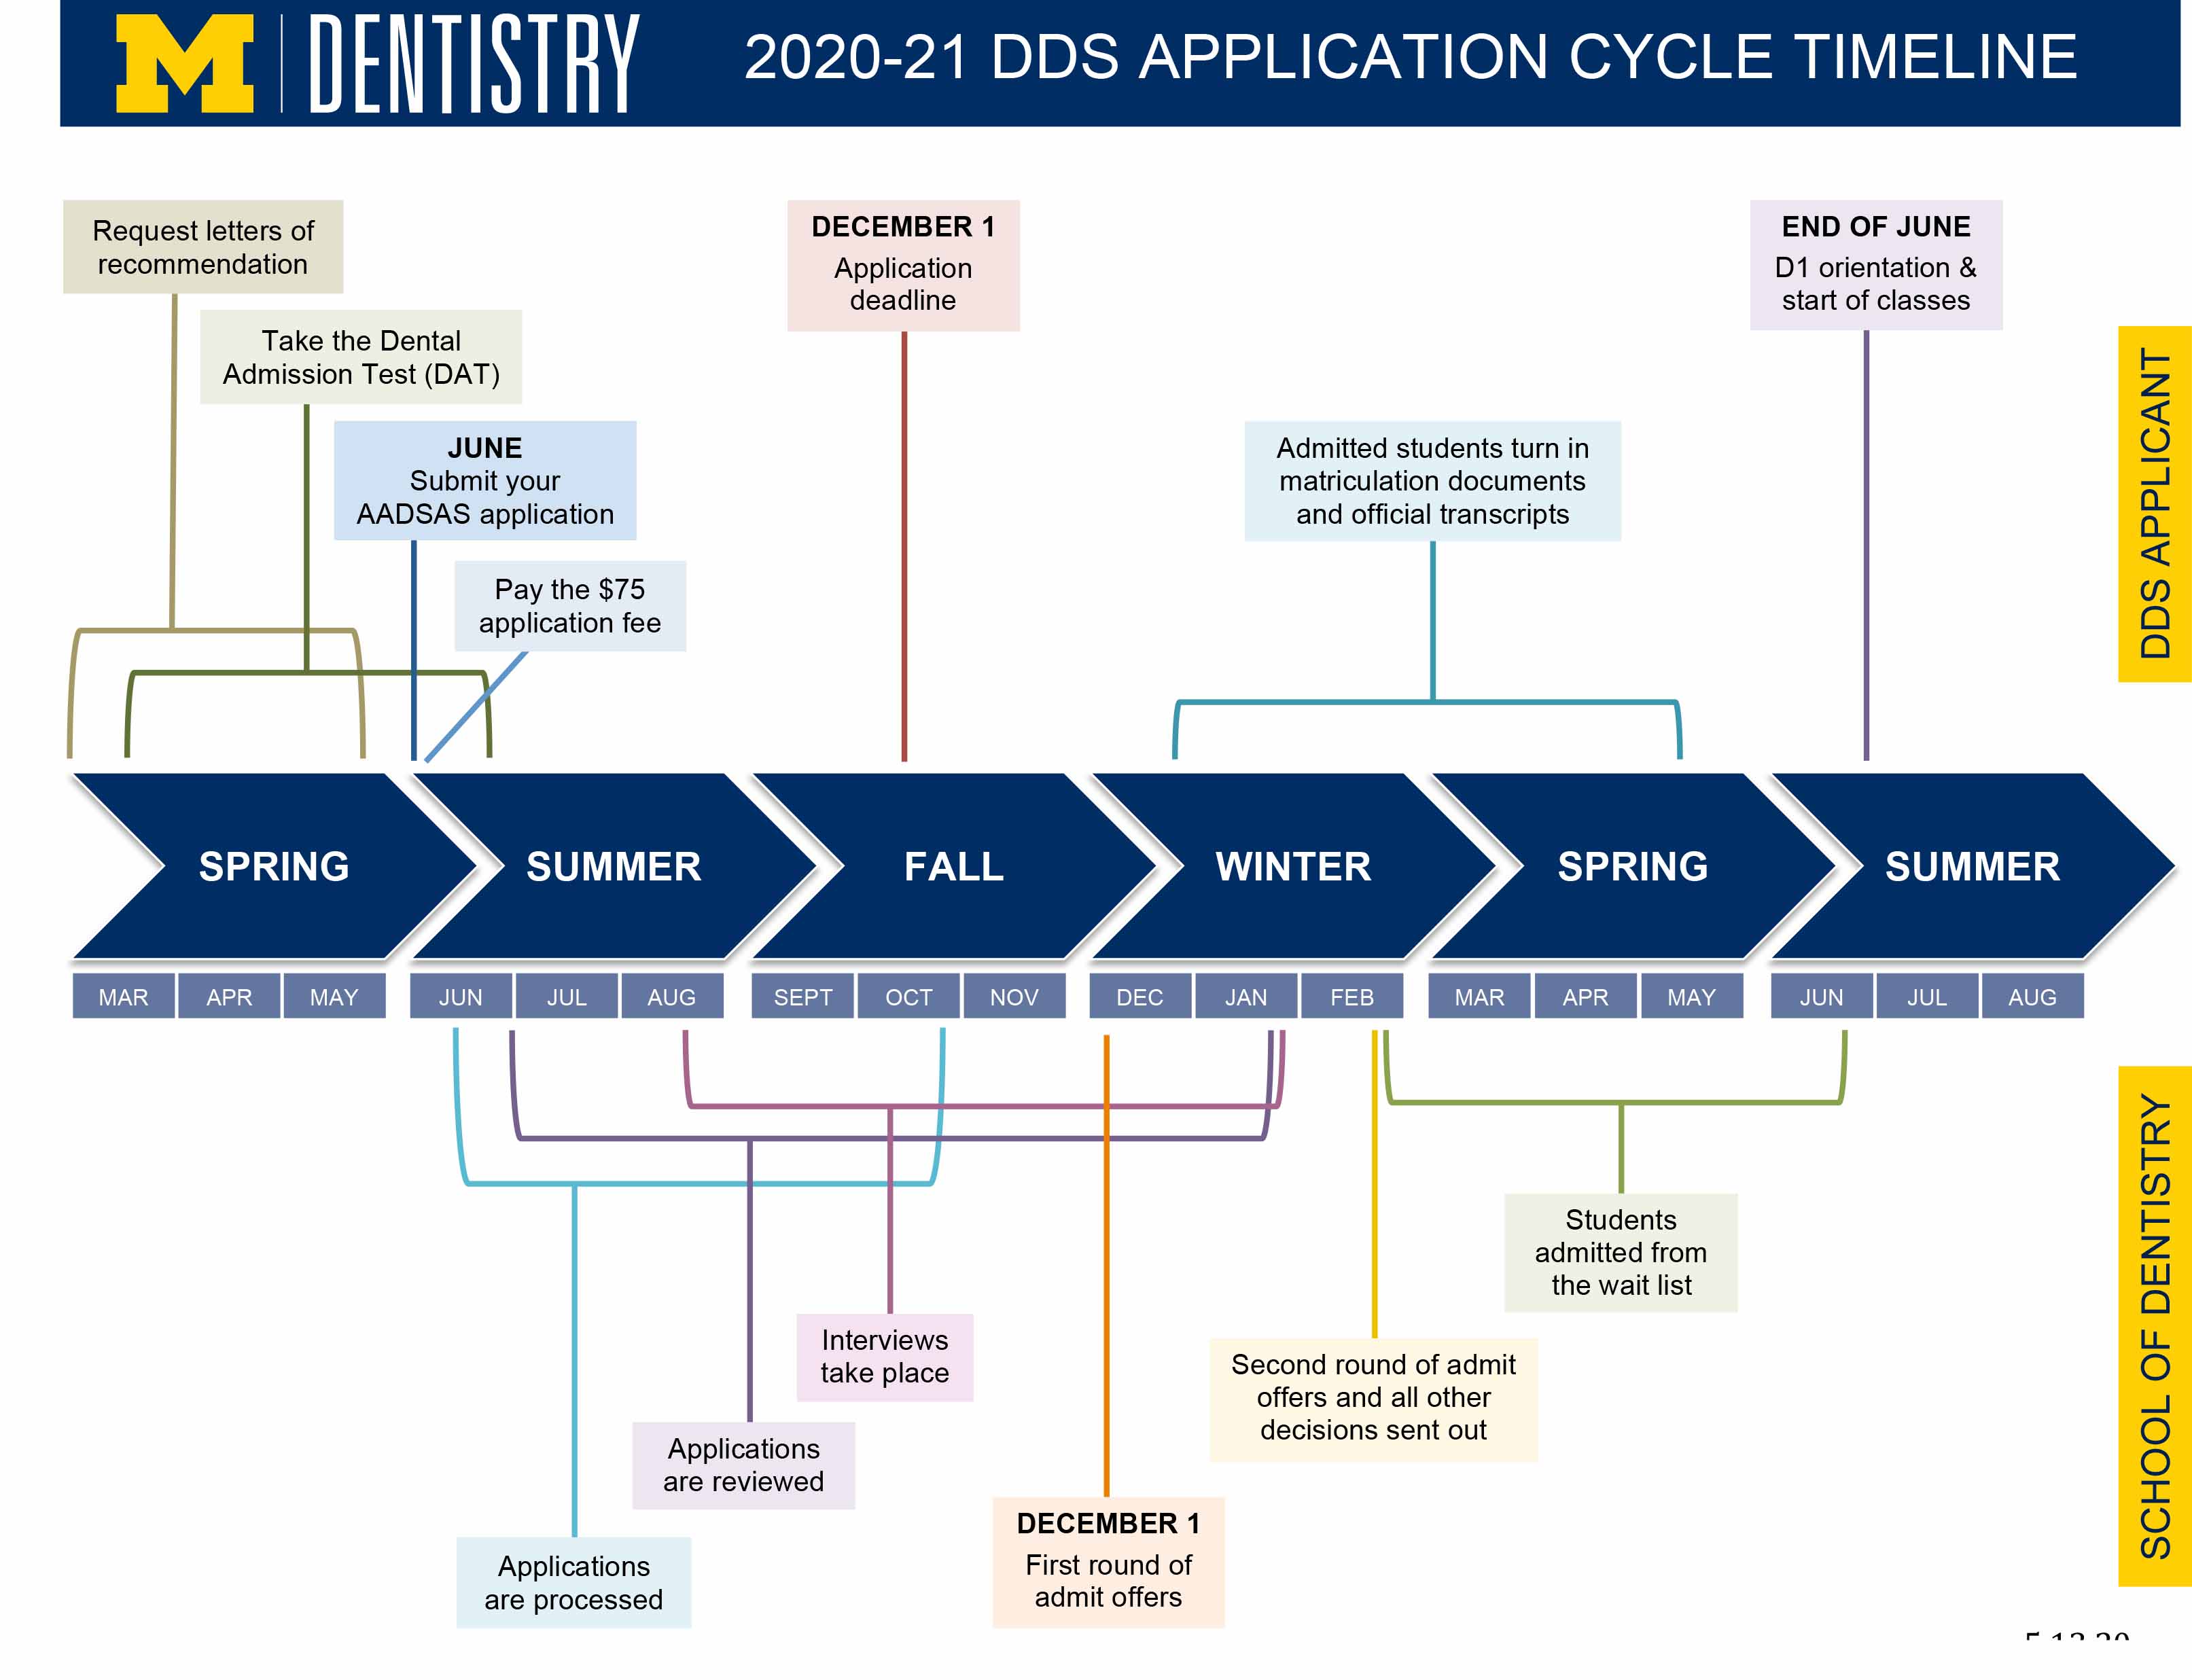 dds application timeline